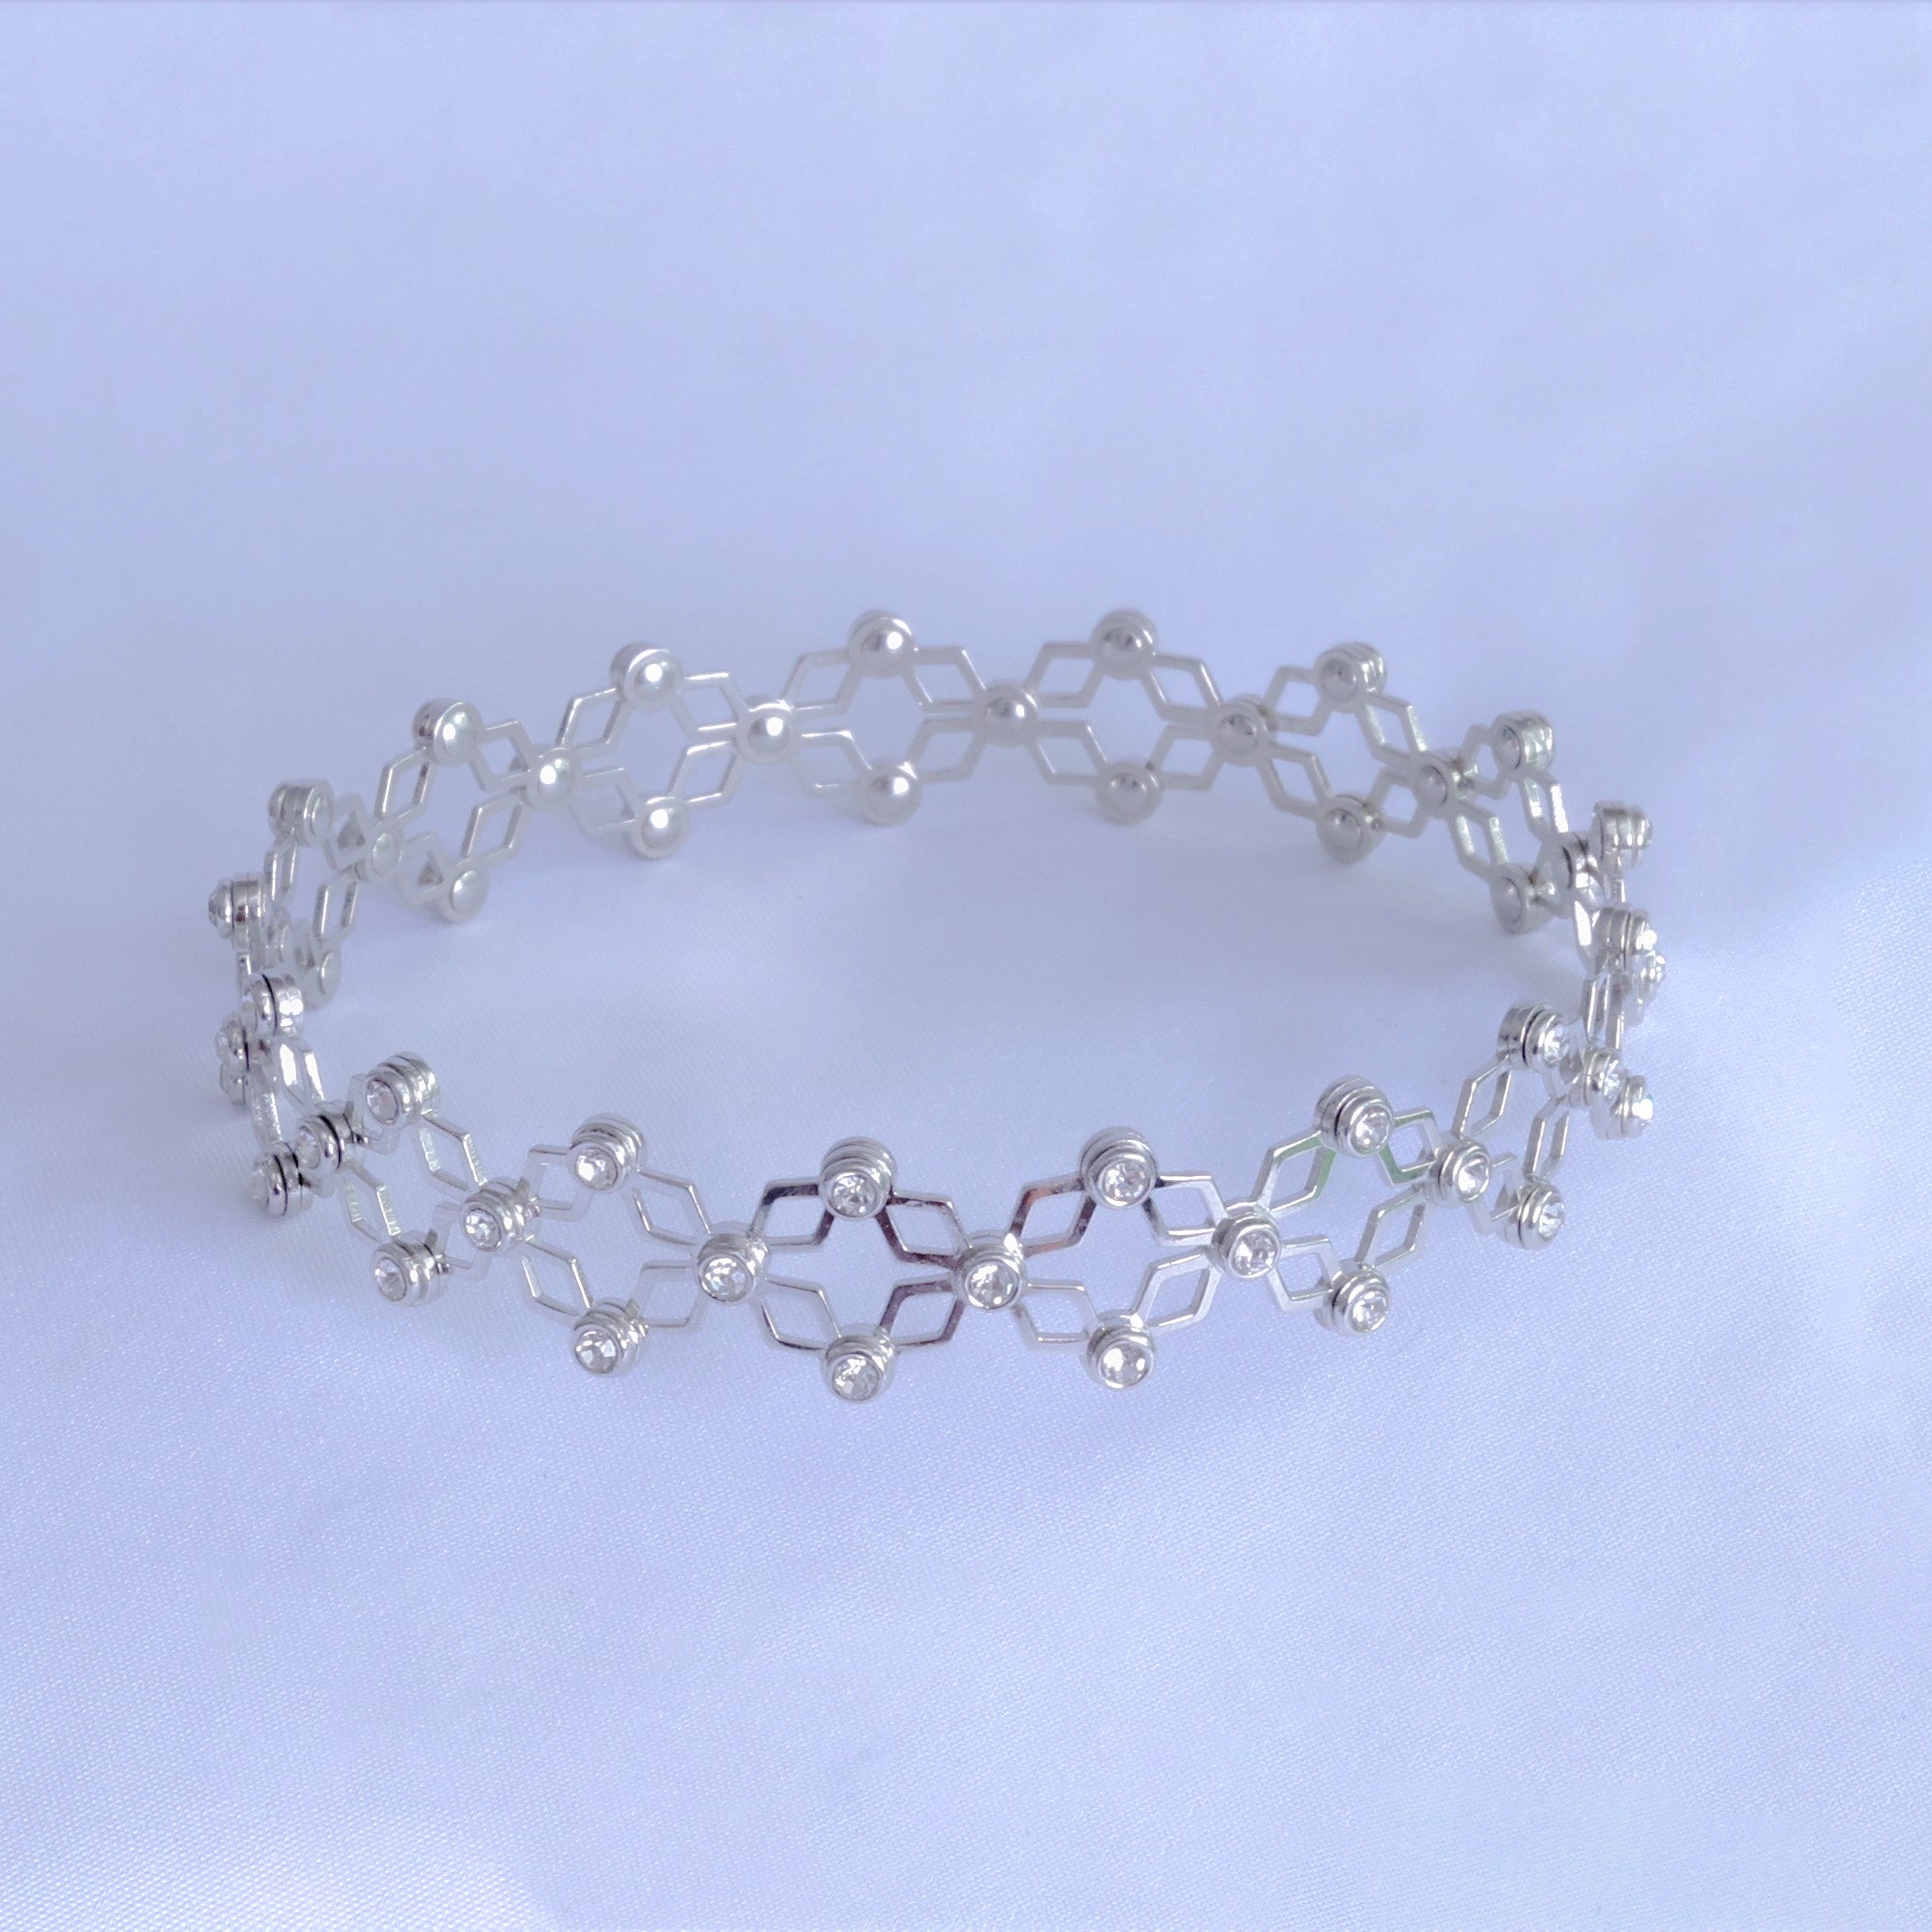 Flexible Silver Bracelet Ring (Two in One)